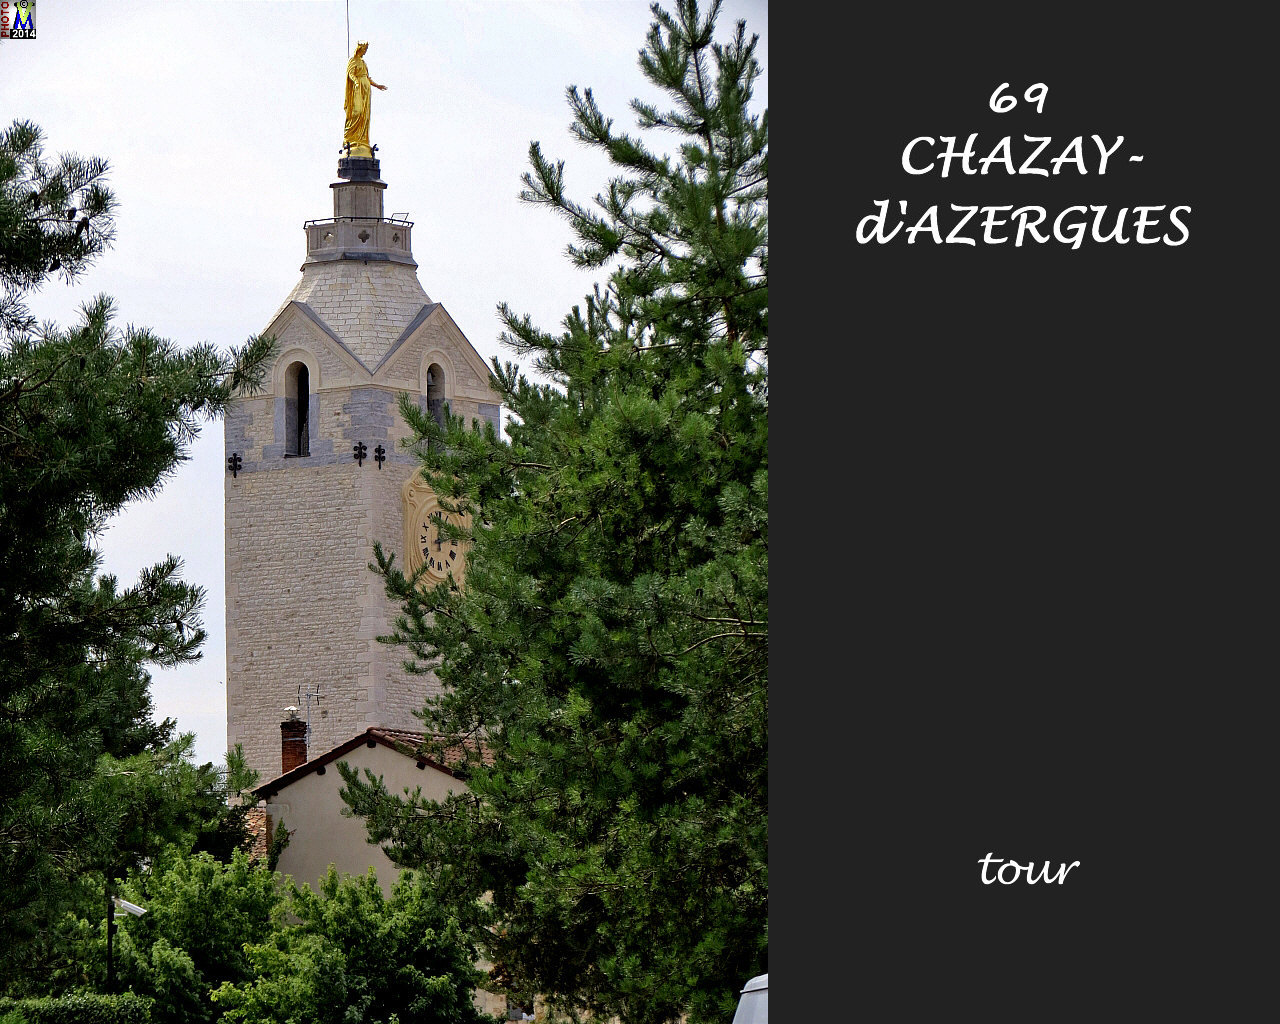 69CHAZAY-AZERGUES_tour_110.jpg